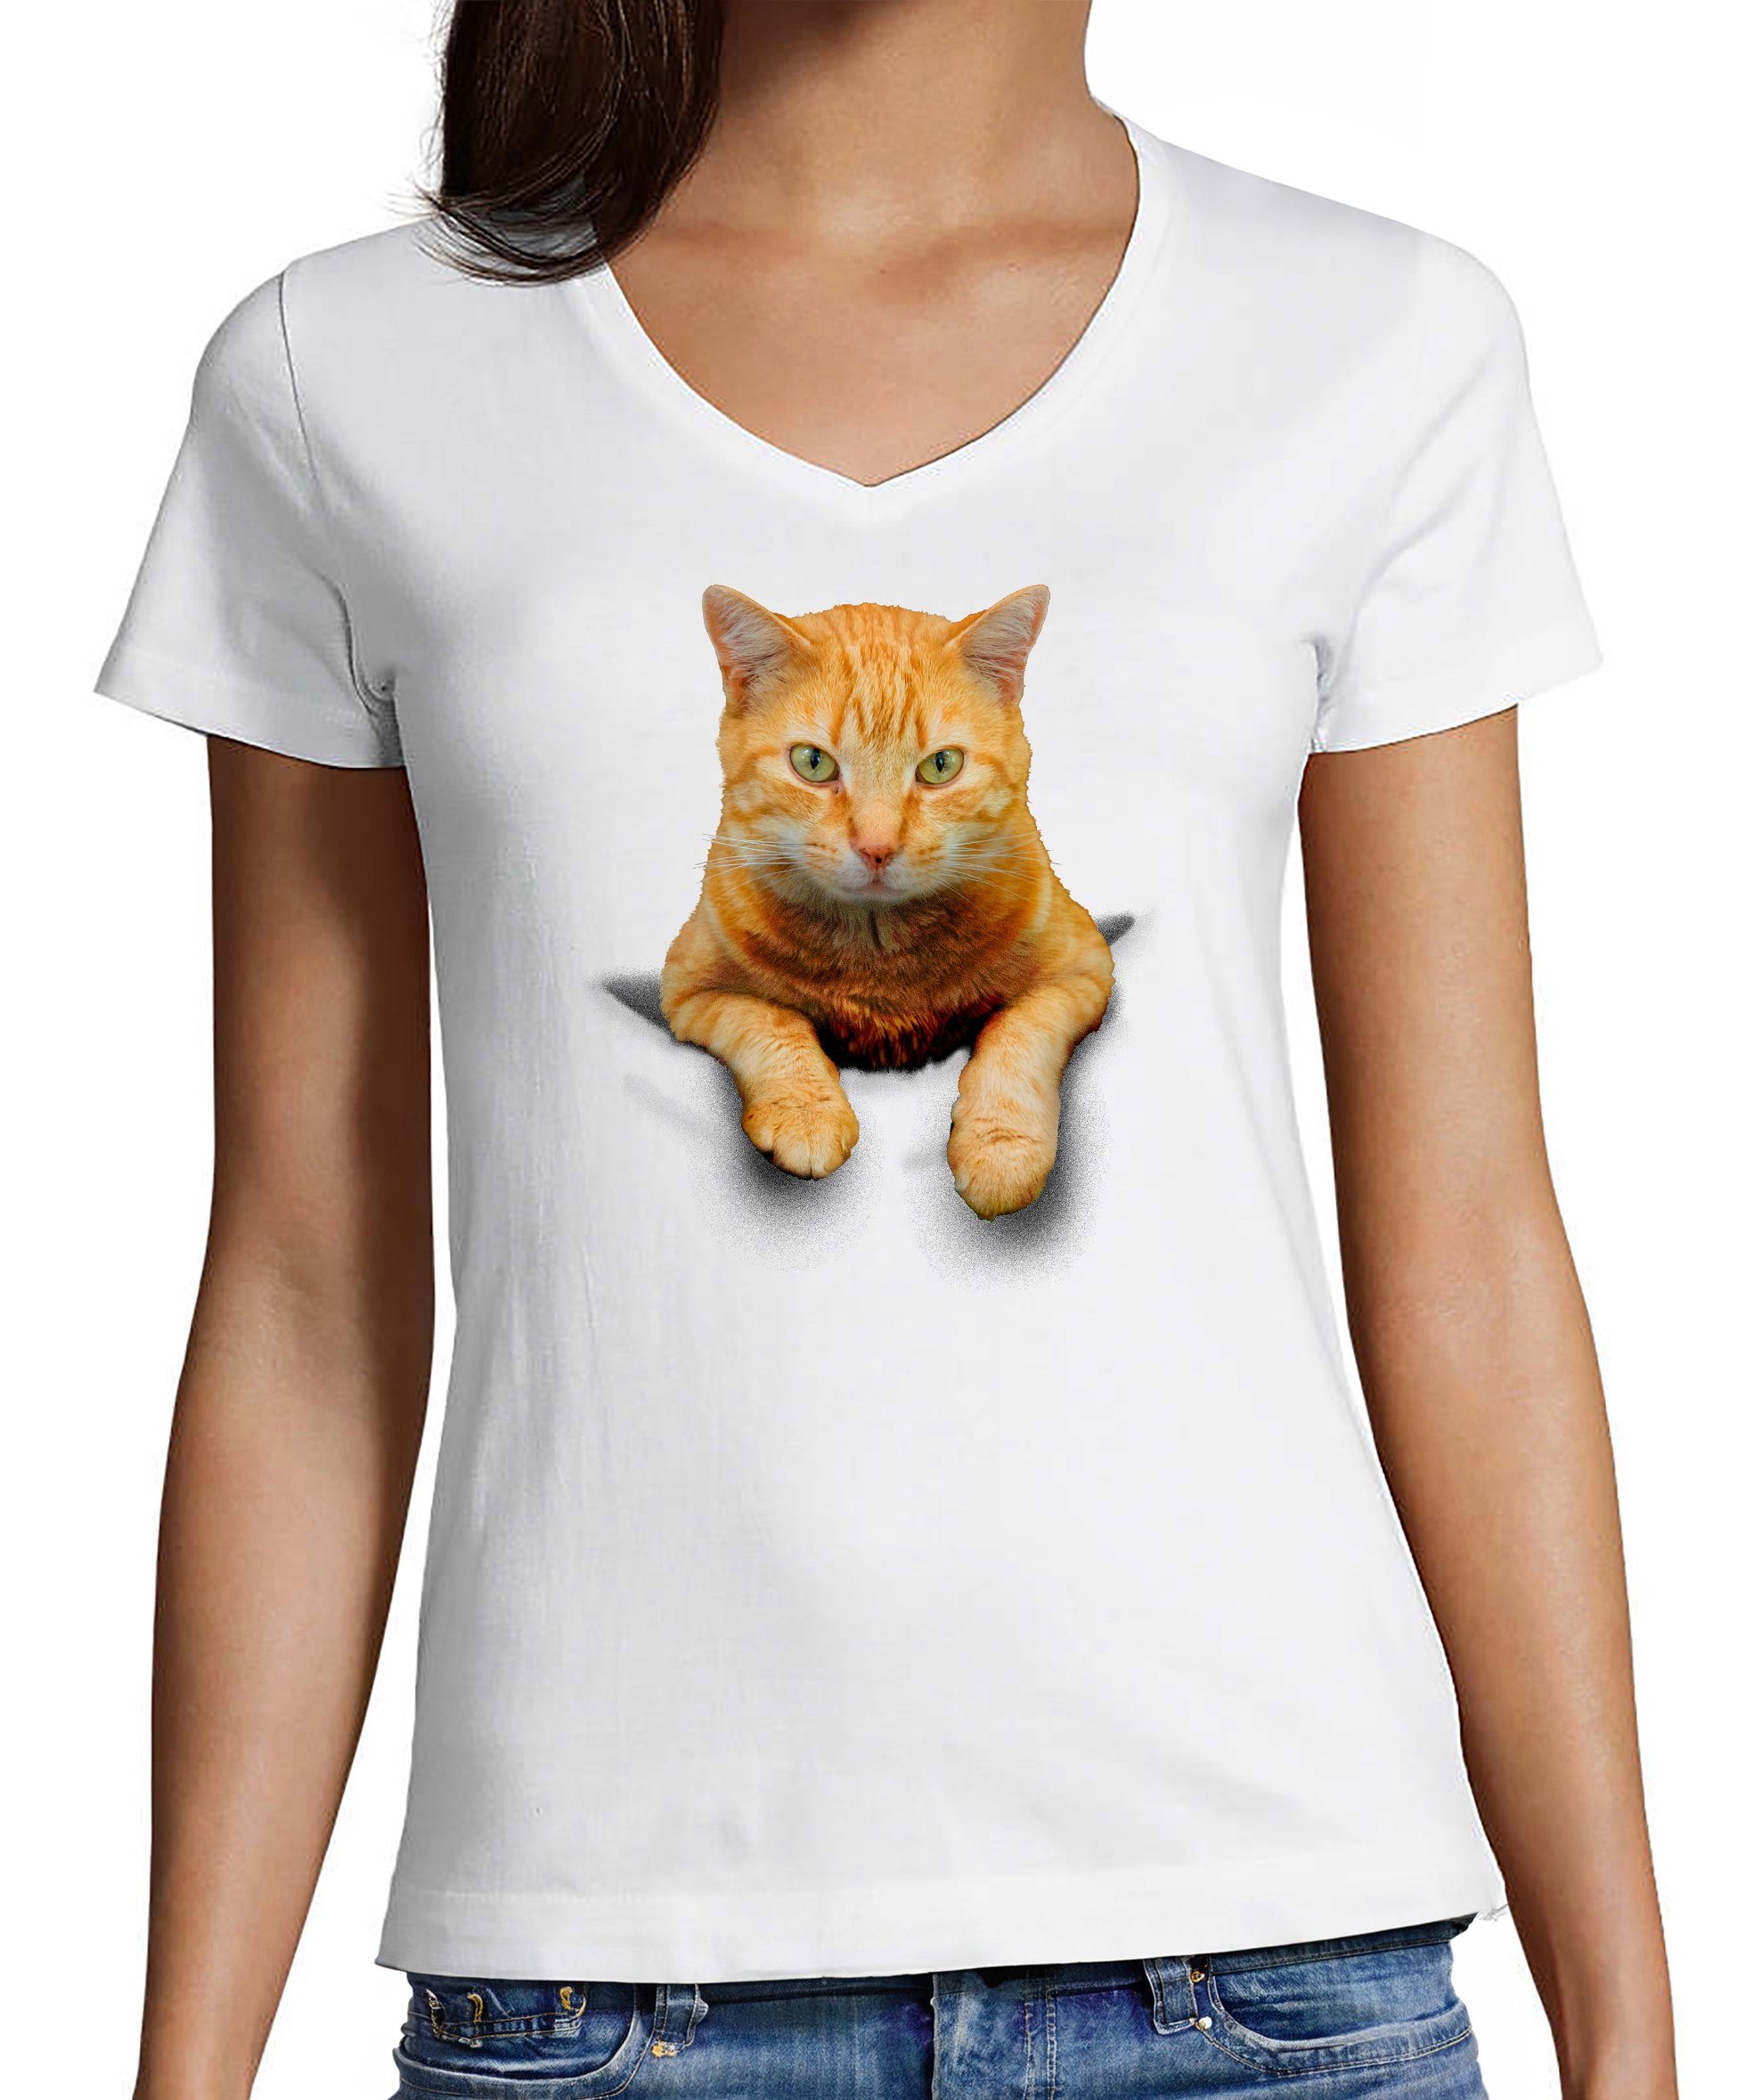 MyDesign24 T-Shirt Damen Katzen Print Shirt bedruckt - Gelbe Katze in der Tasche Baumwollshirt mit Aufdruck, Slim Fit, i109 weiss